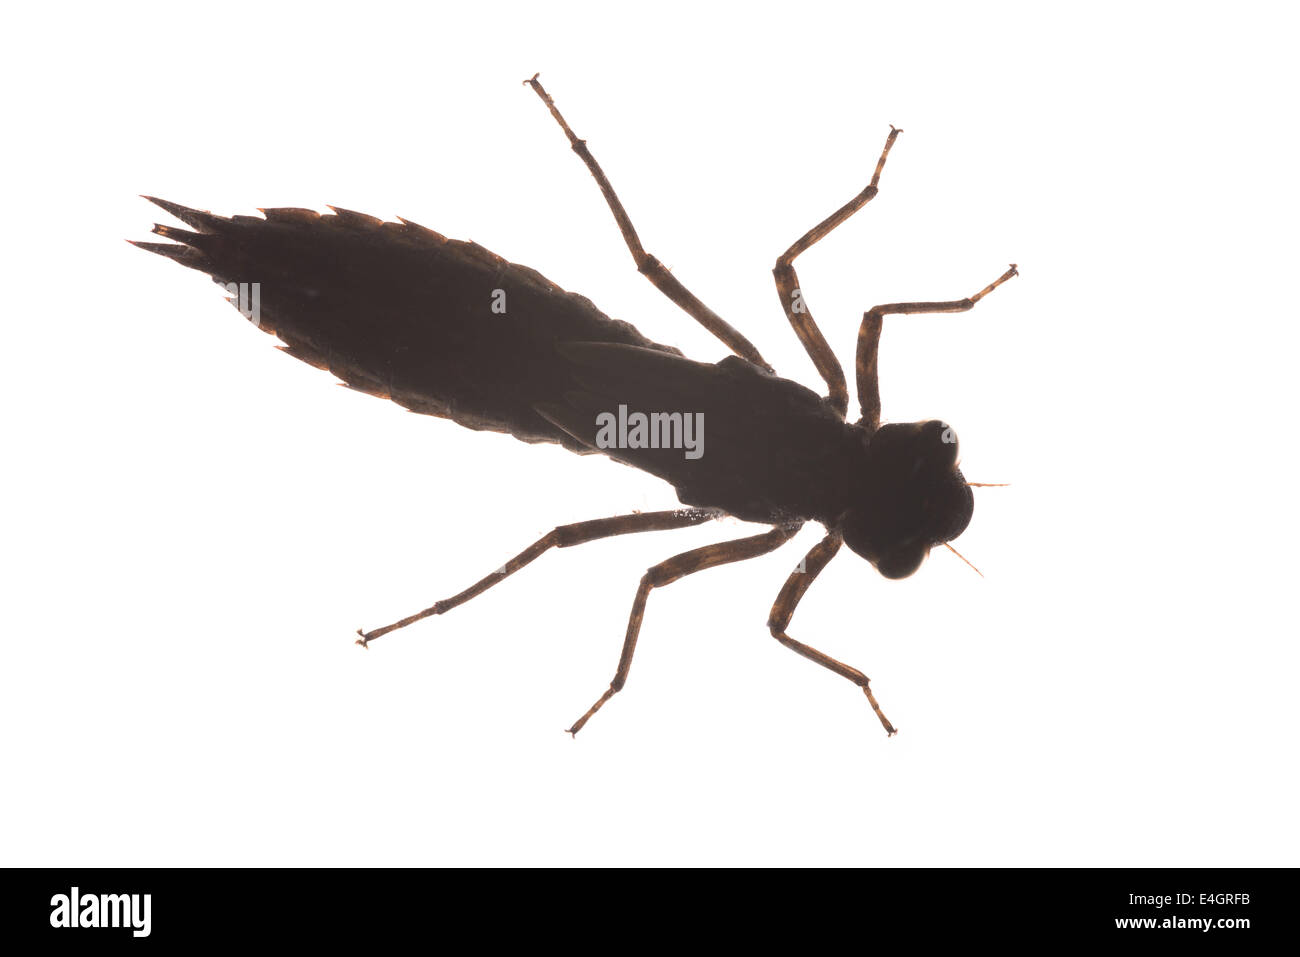 Paura e fobia paura di insetti larve di libellula delineano silhouette della ninfa maturo Foto Stock